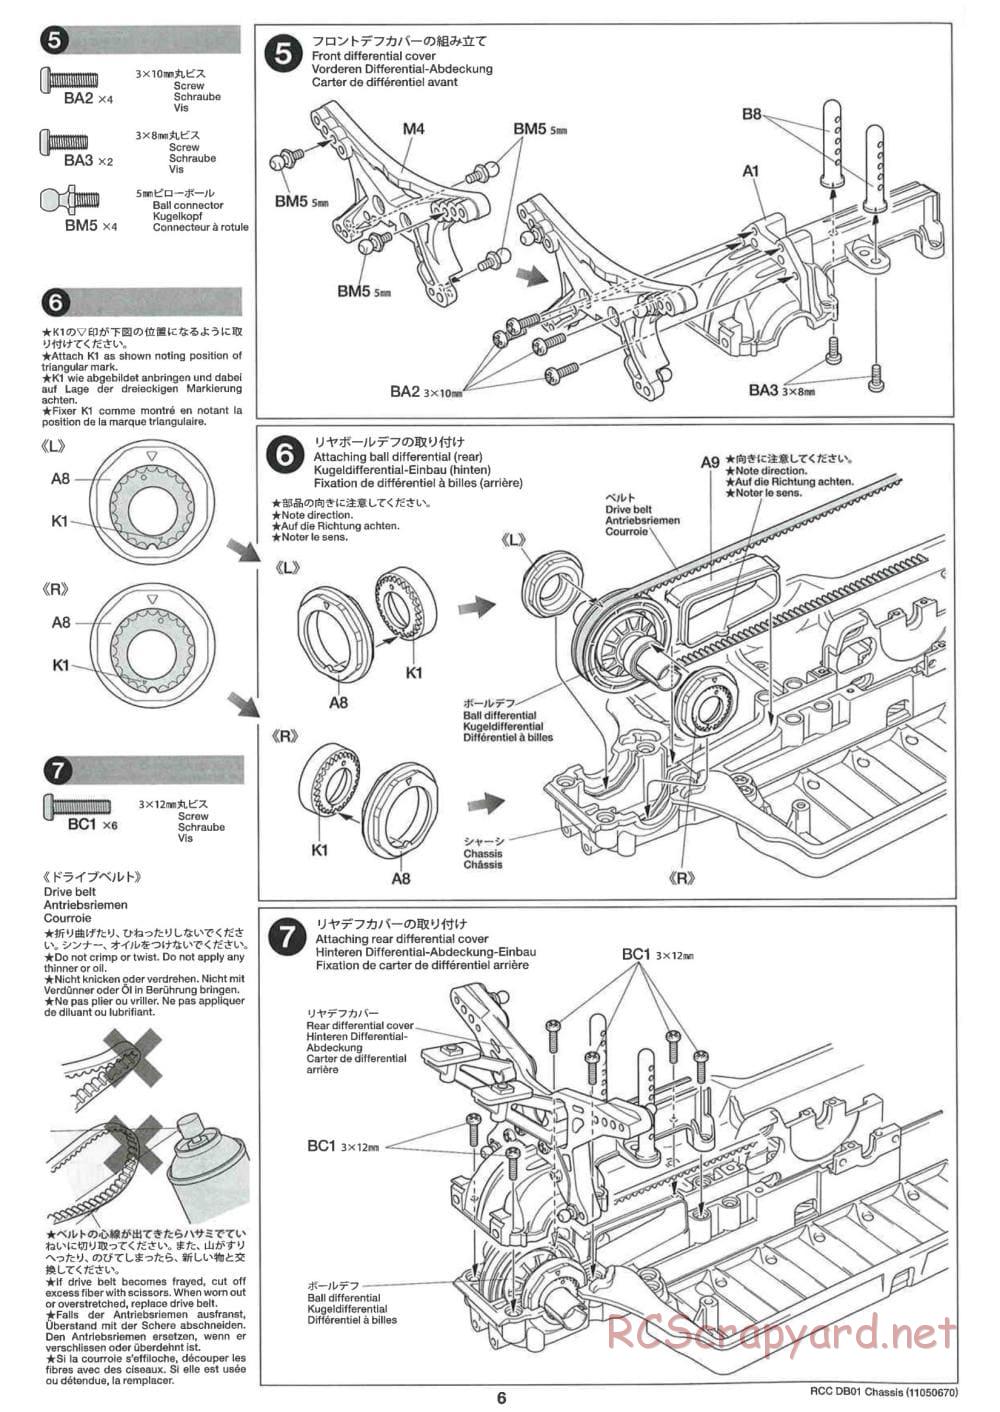 Tamiya - DB-01 Chassis - Manual - Page 6